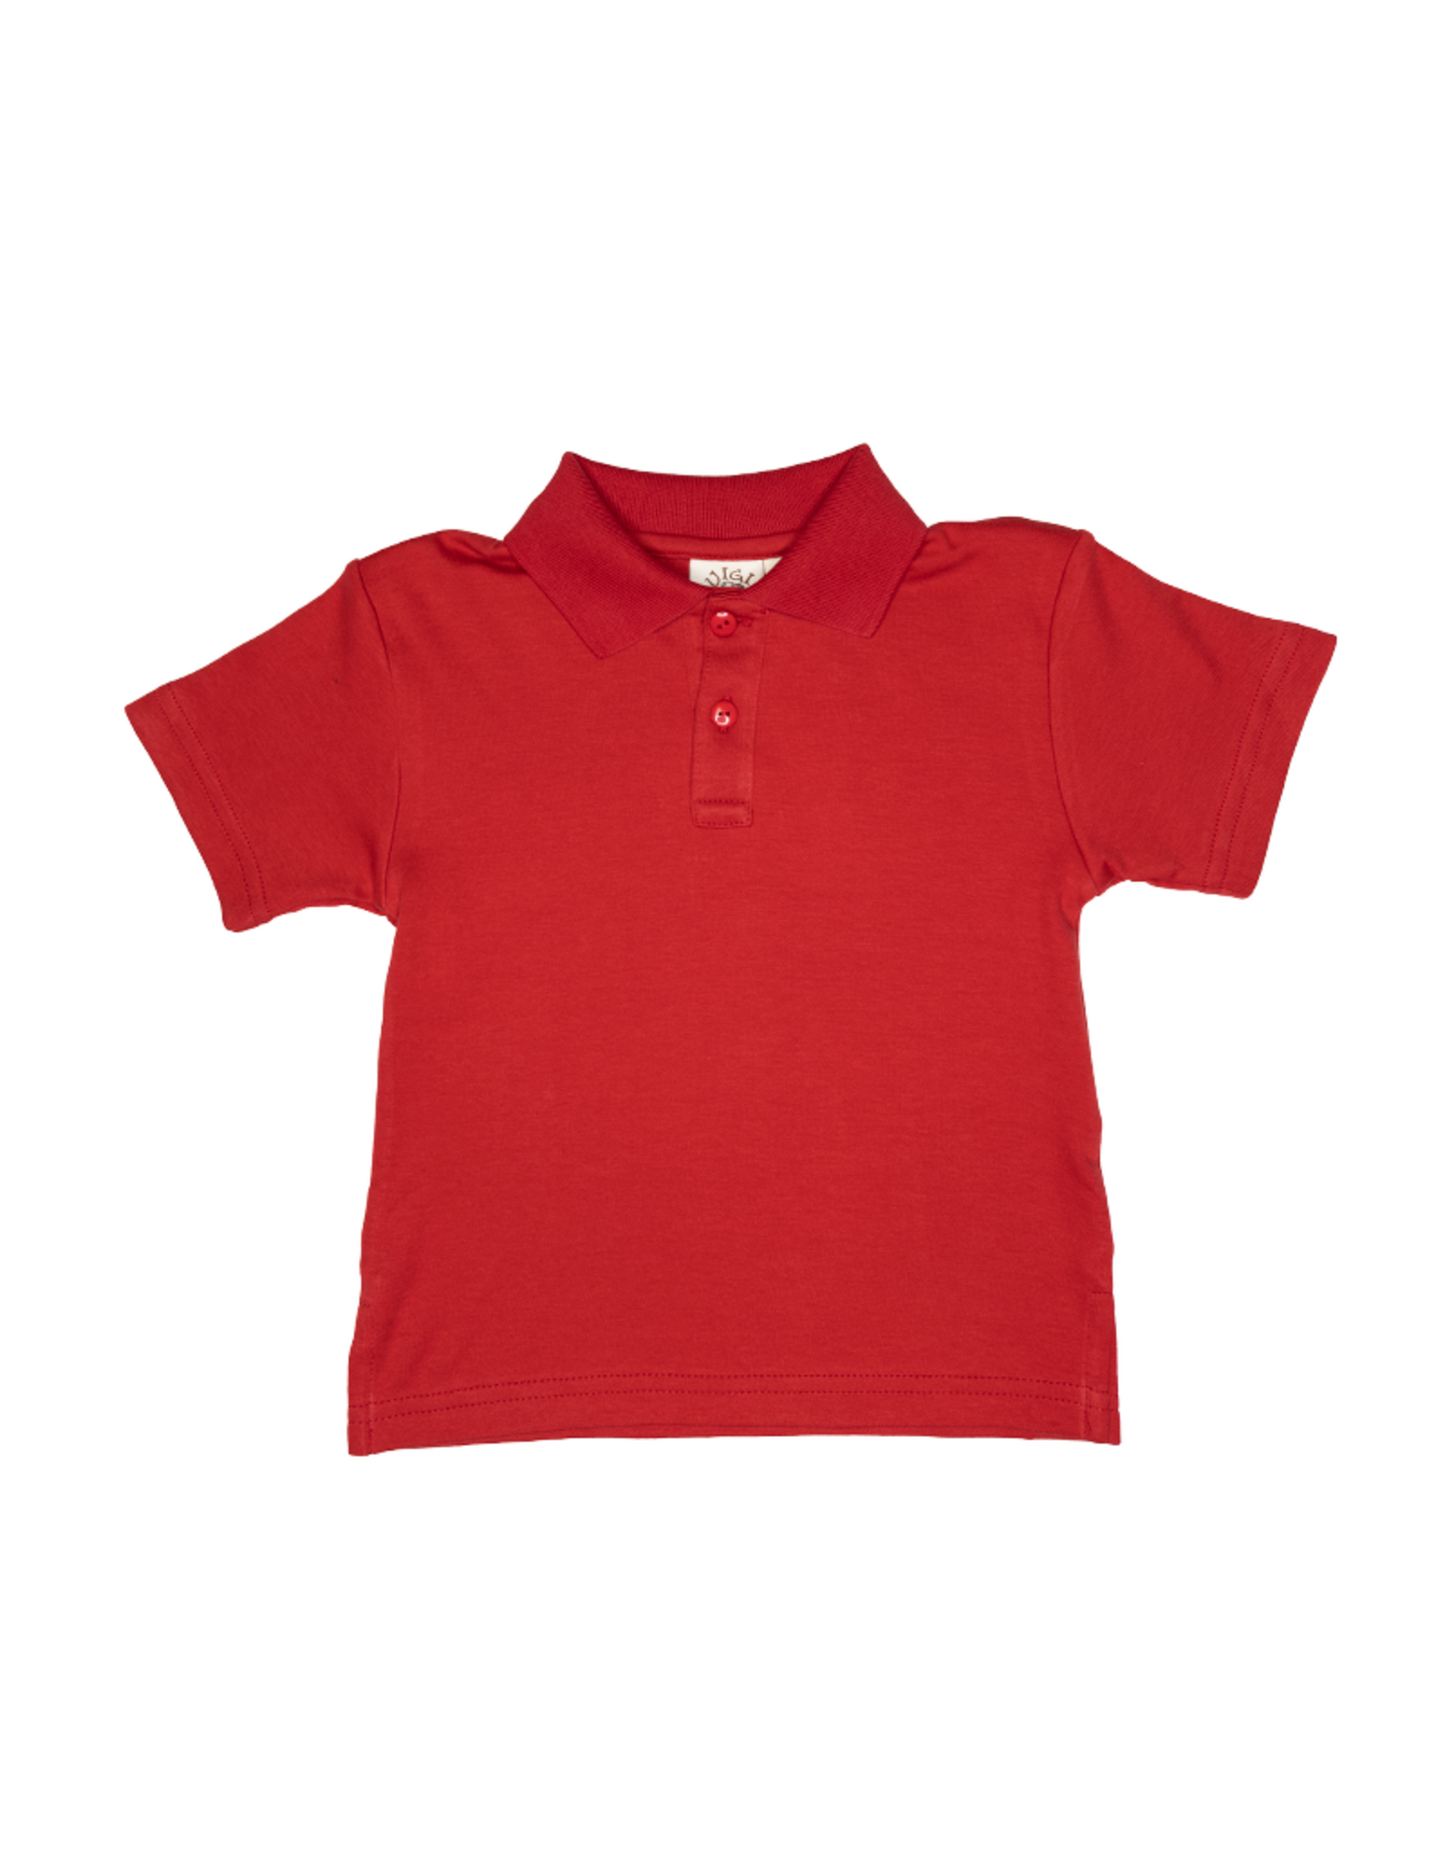 Boys Red Short Sleeve Polo